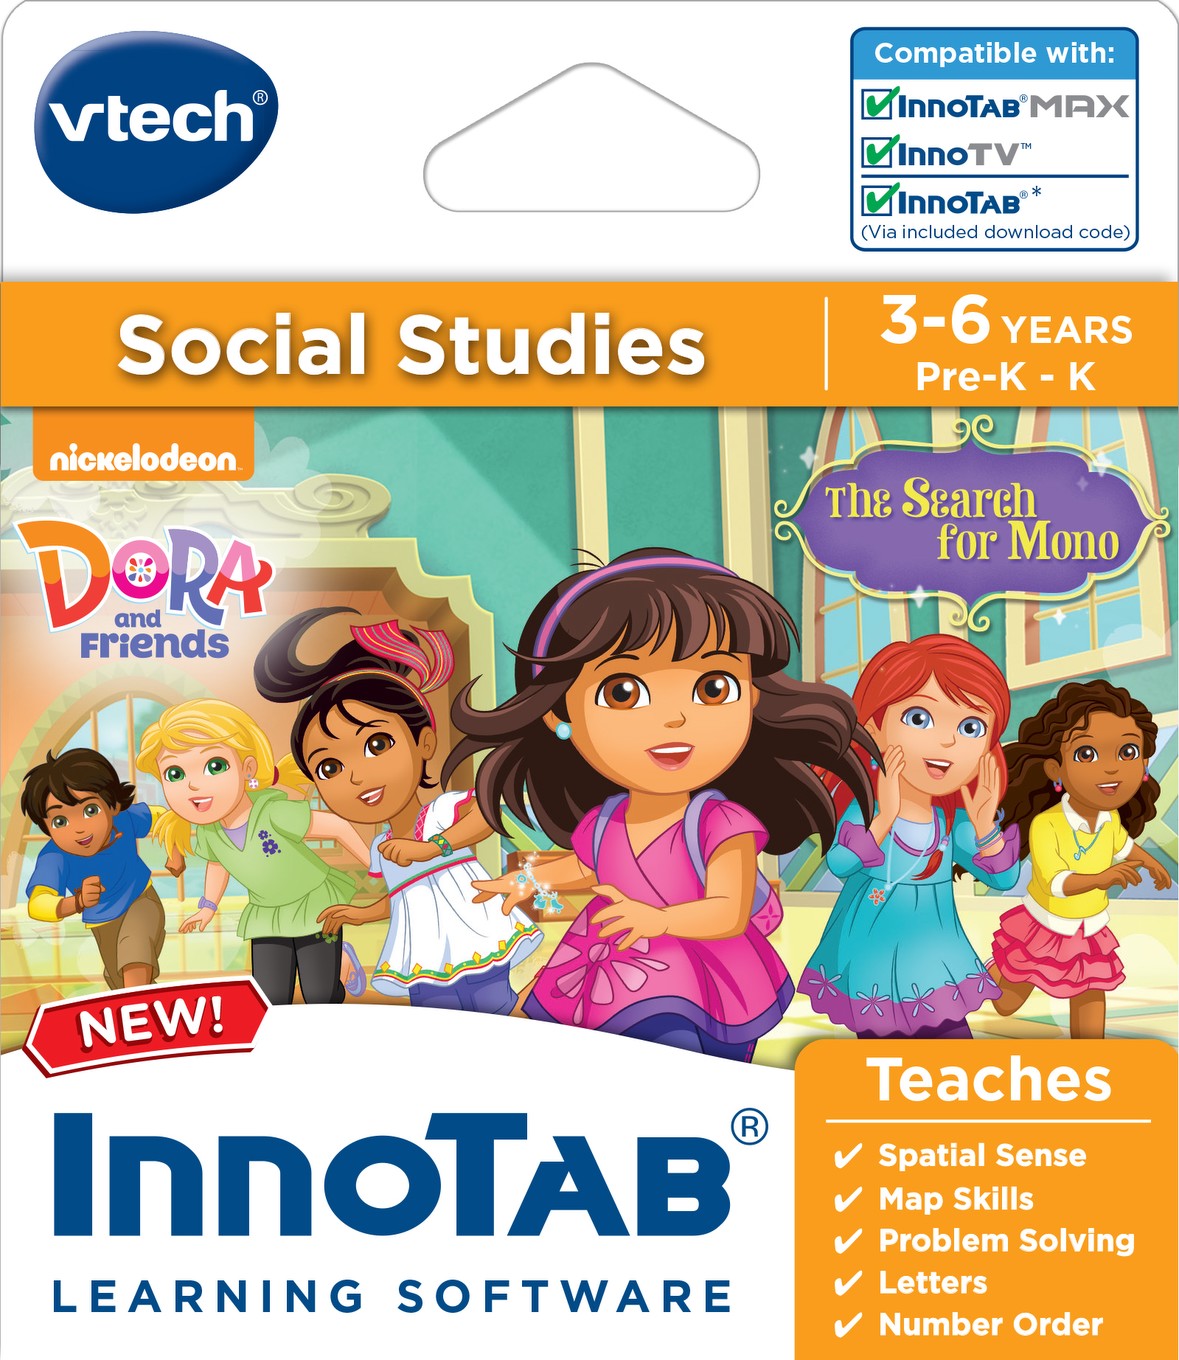 Vtech Innotab software-Dora e amici-STUDI SOCIALI learing Game-Nuovo 